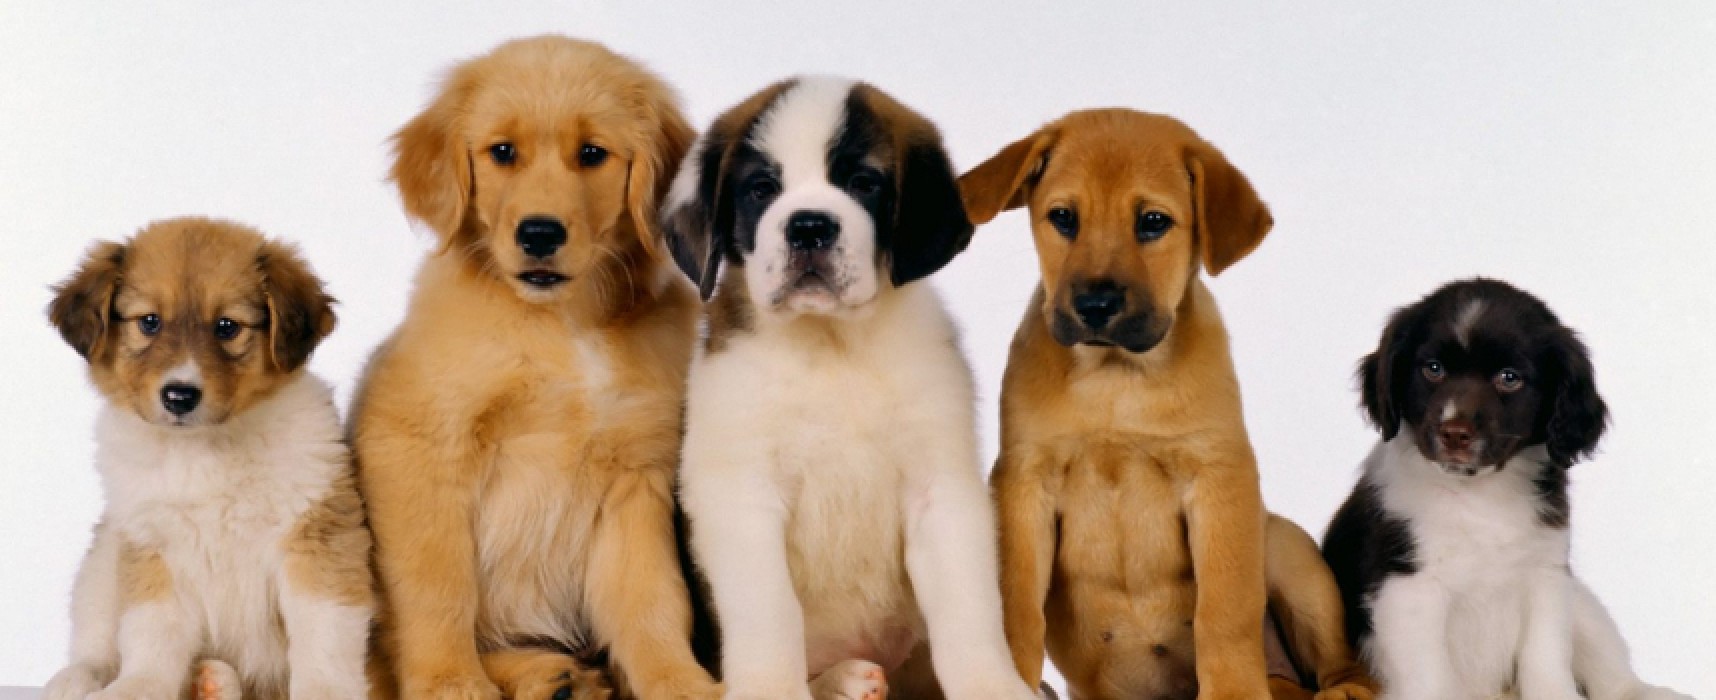 Interact e Rotary Bisceglie, prima edizione di “Una notte da cani”, l’evento dedicato agli amici a quattro zampe